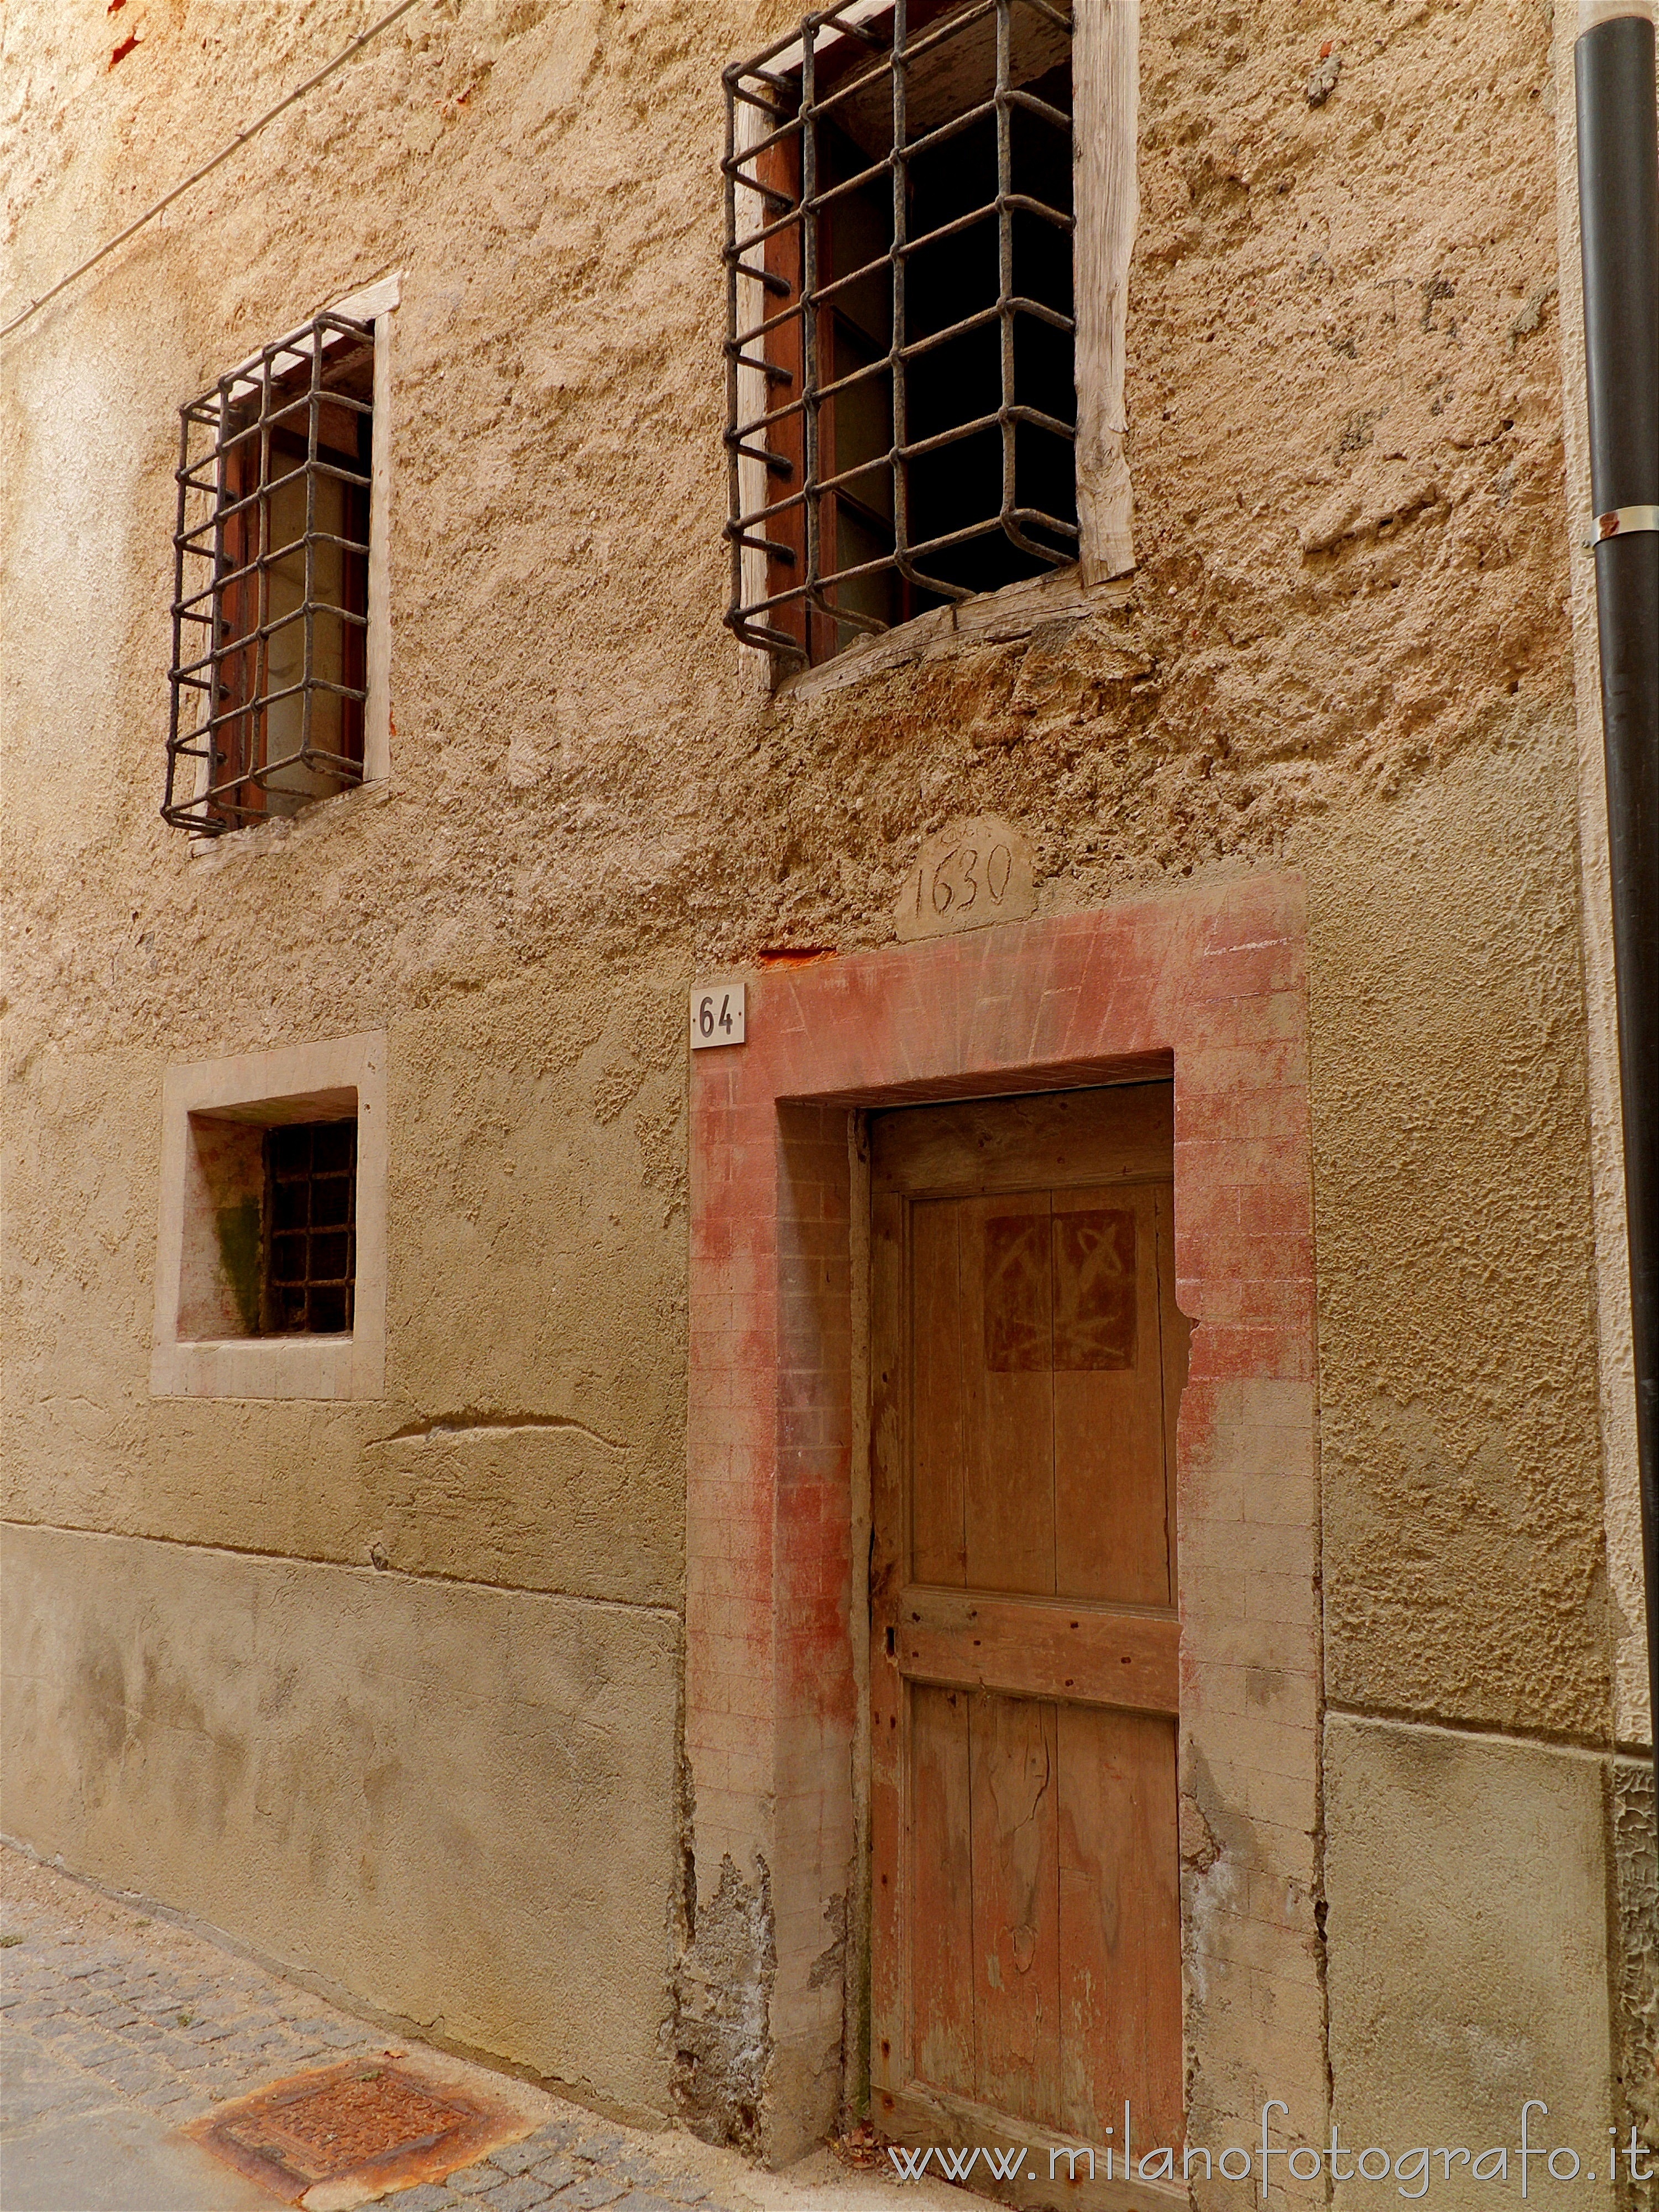 Quittengo frazione di Campiglia Cervo (Biella): Antica casa curiosamente somigliante ad una prigione - Quittengo frazione di Campiglia Cervo (Biella)